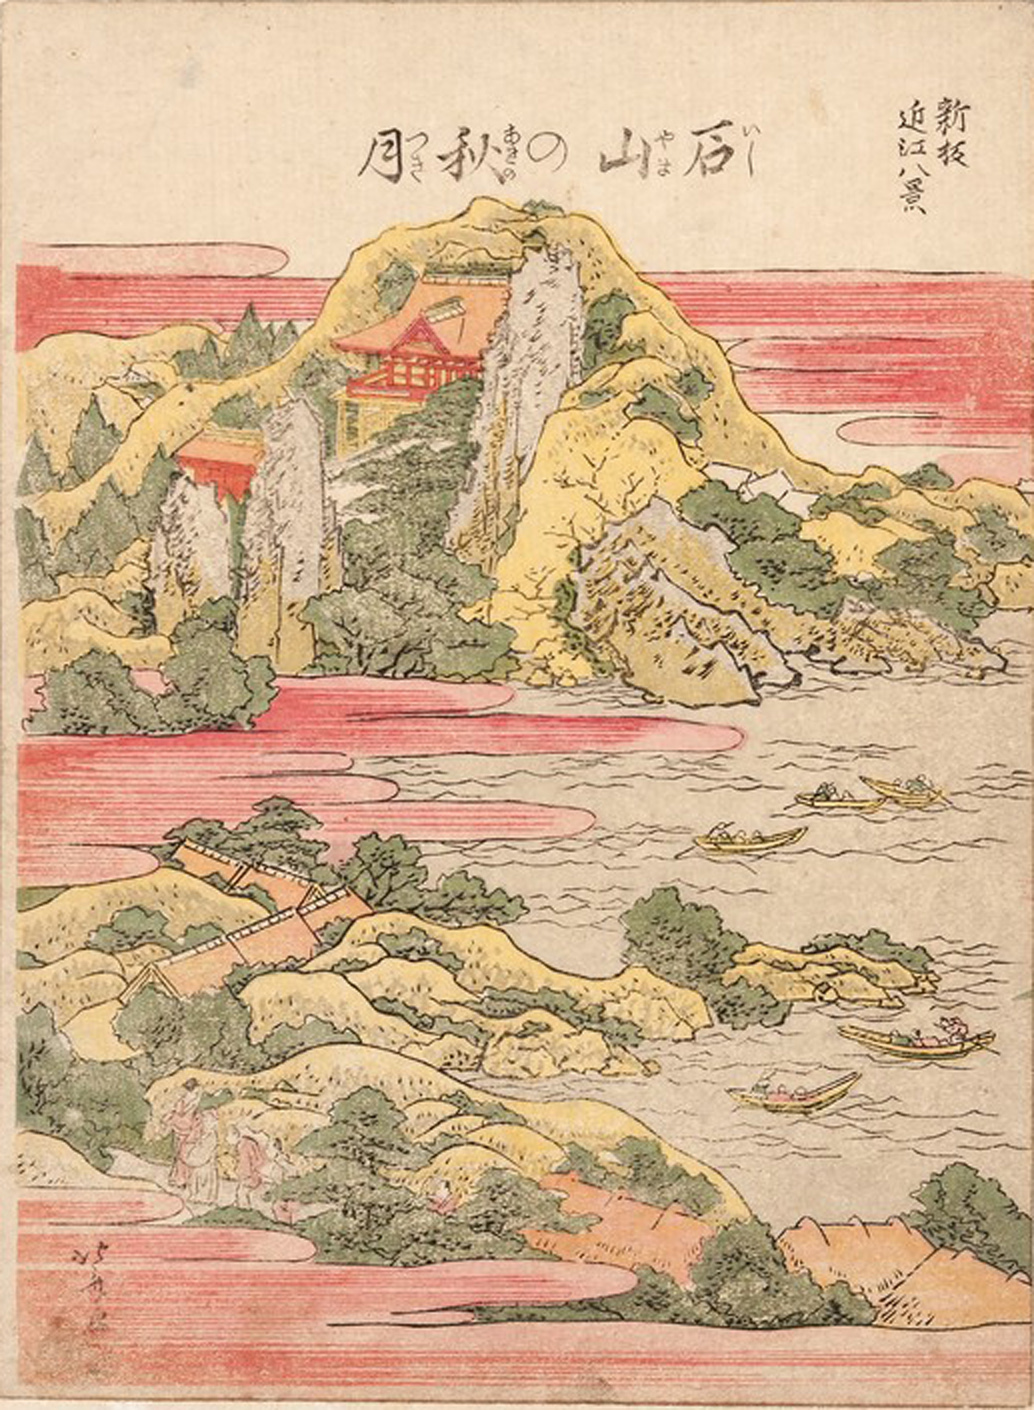 Hokusai - Autumn Moon at Ishiyama - 1802 Vertical Edition